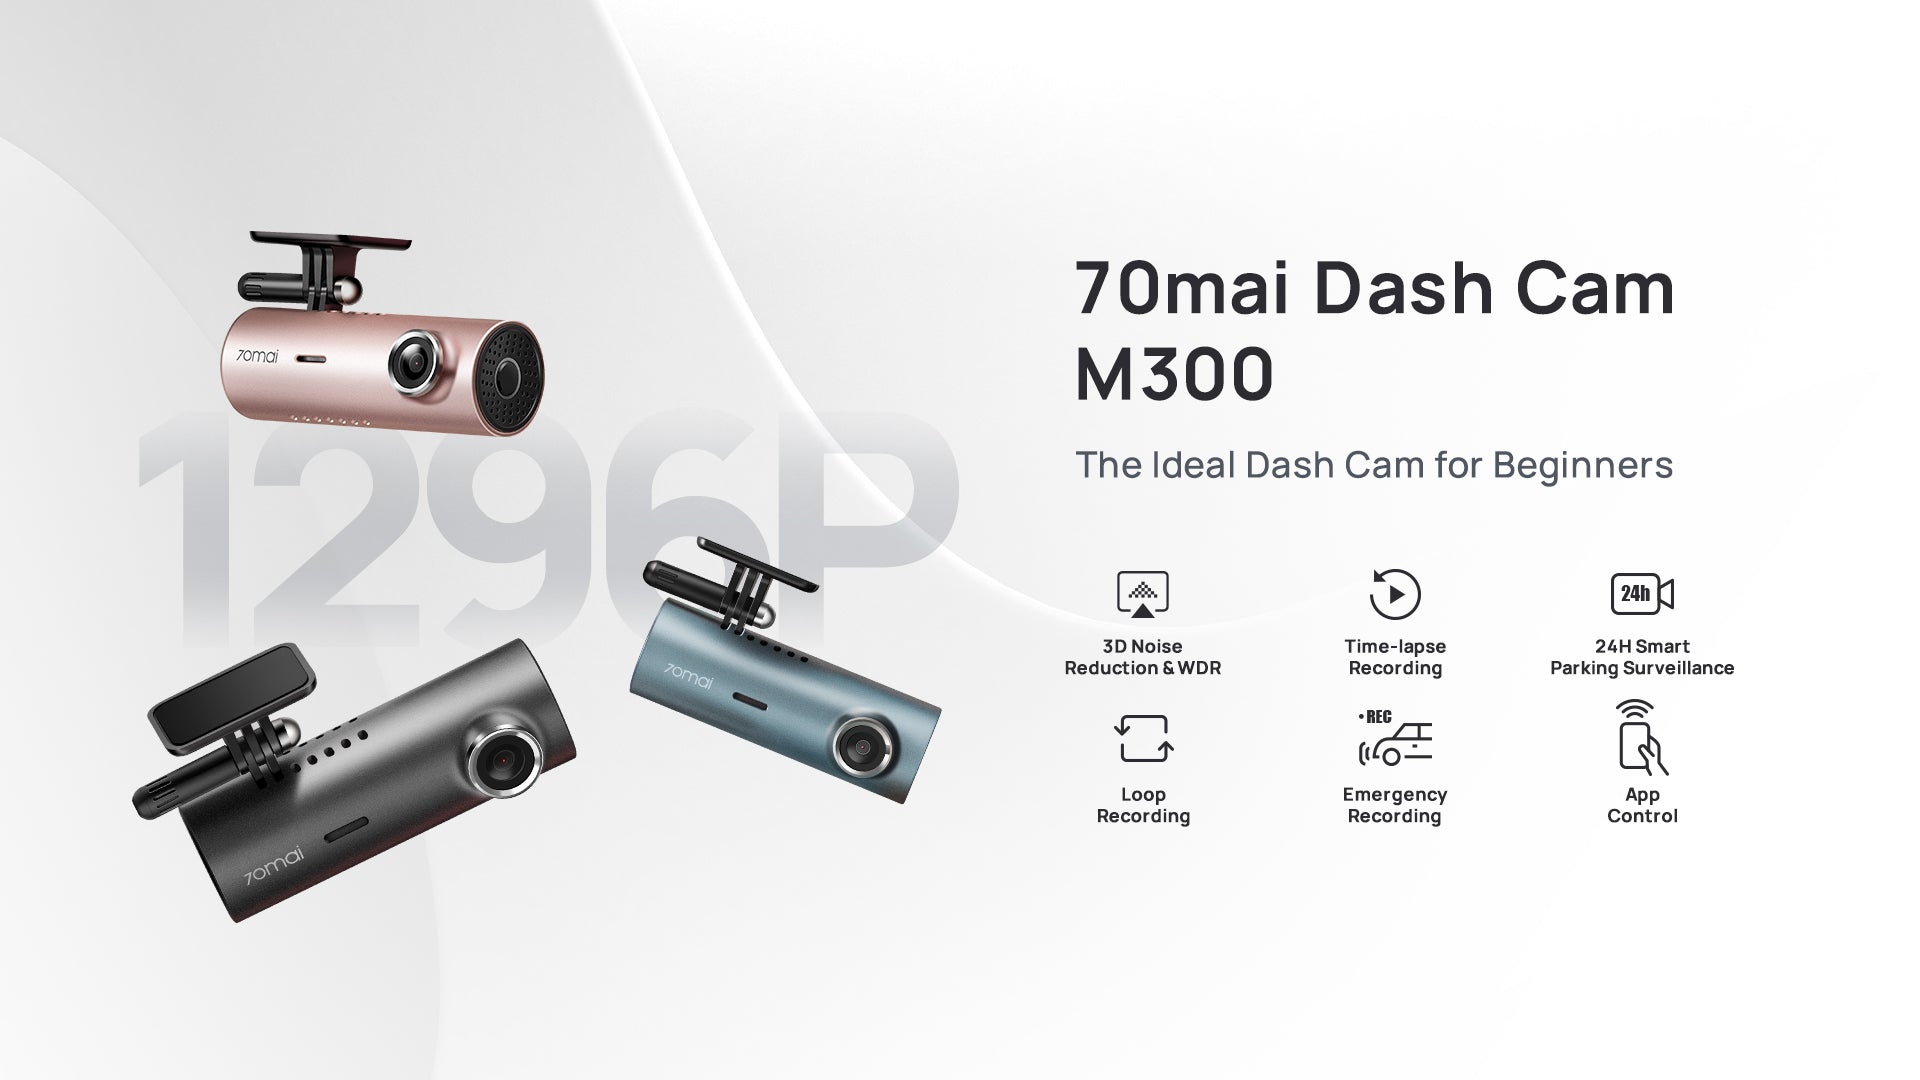 70mai Dash Cam M300 1296P HD 3D Noise Reduction Vehicle Security